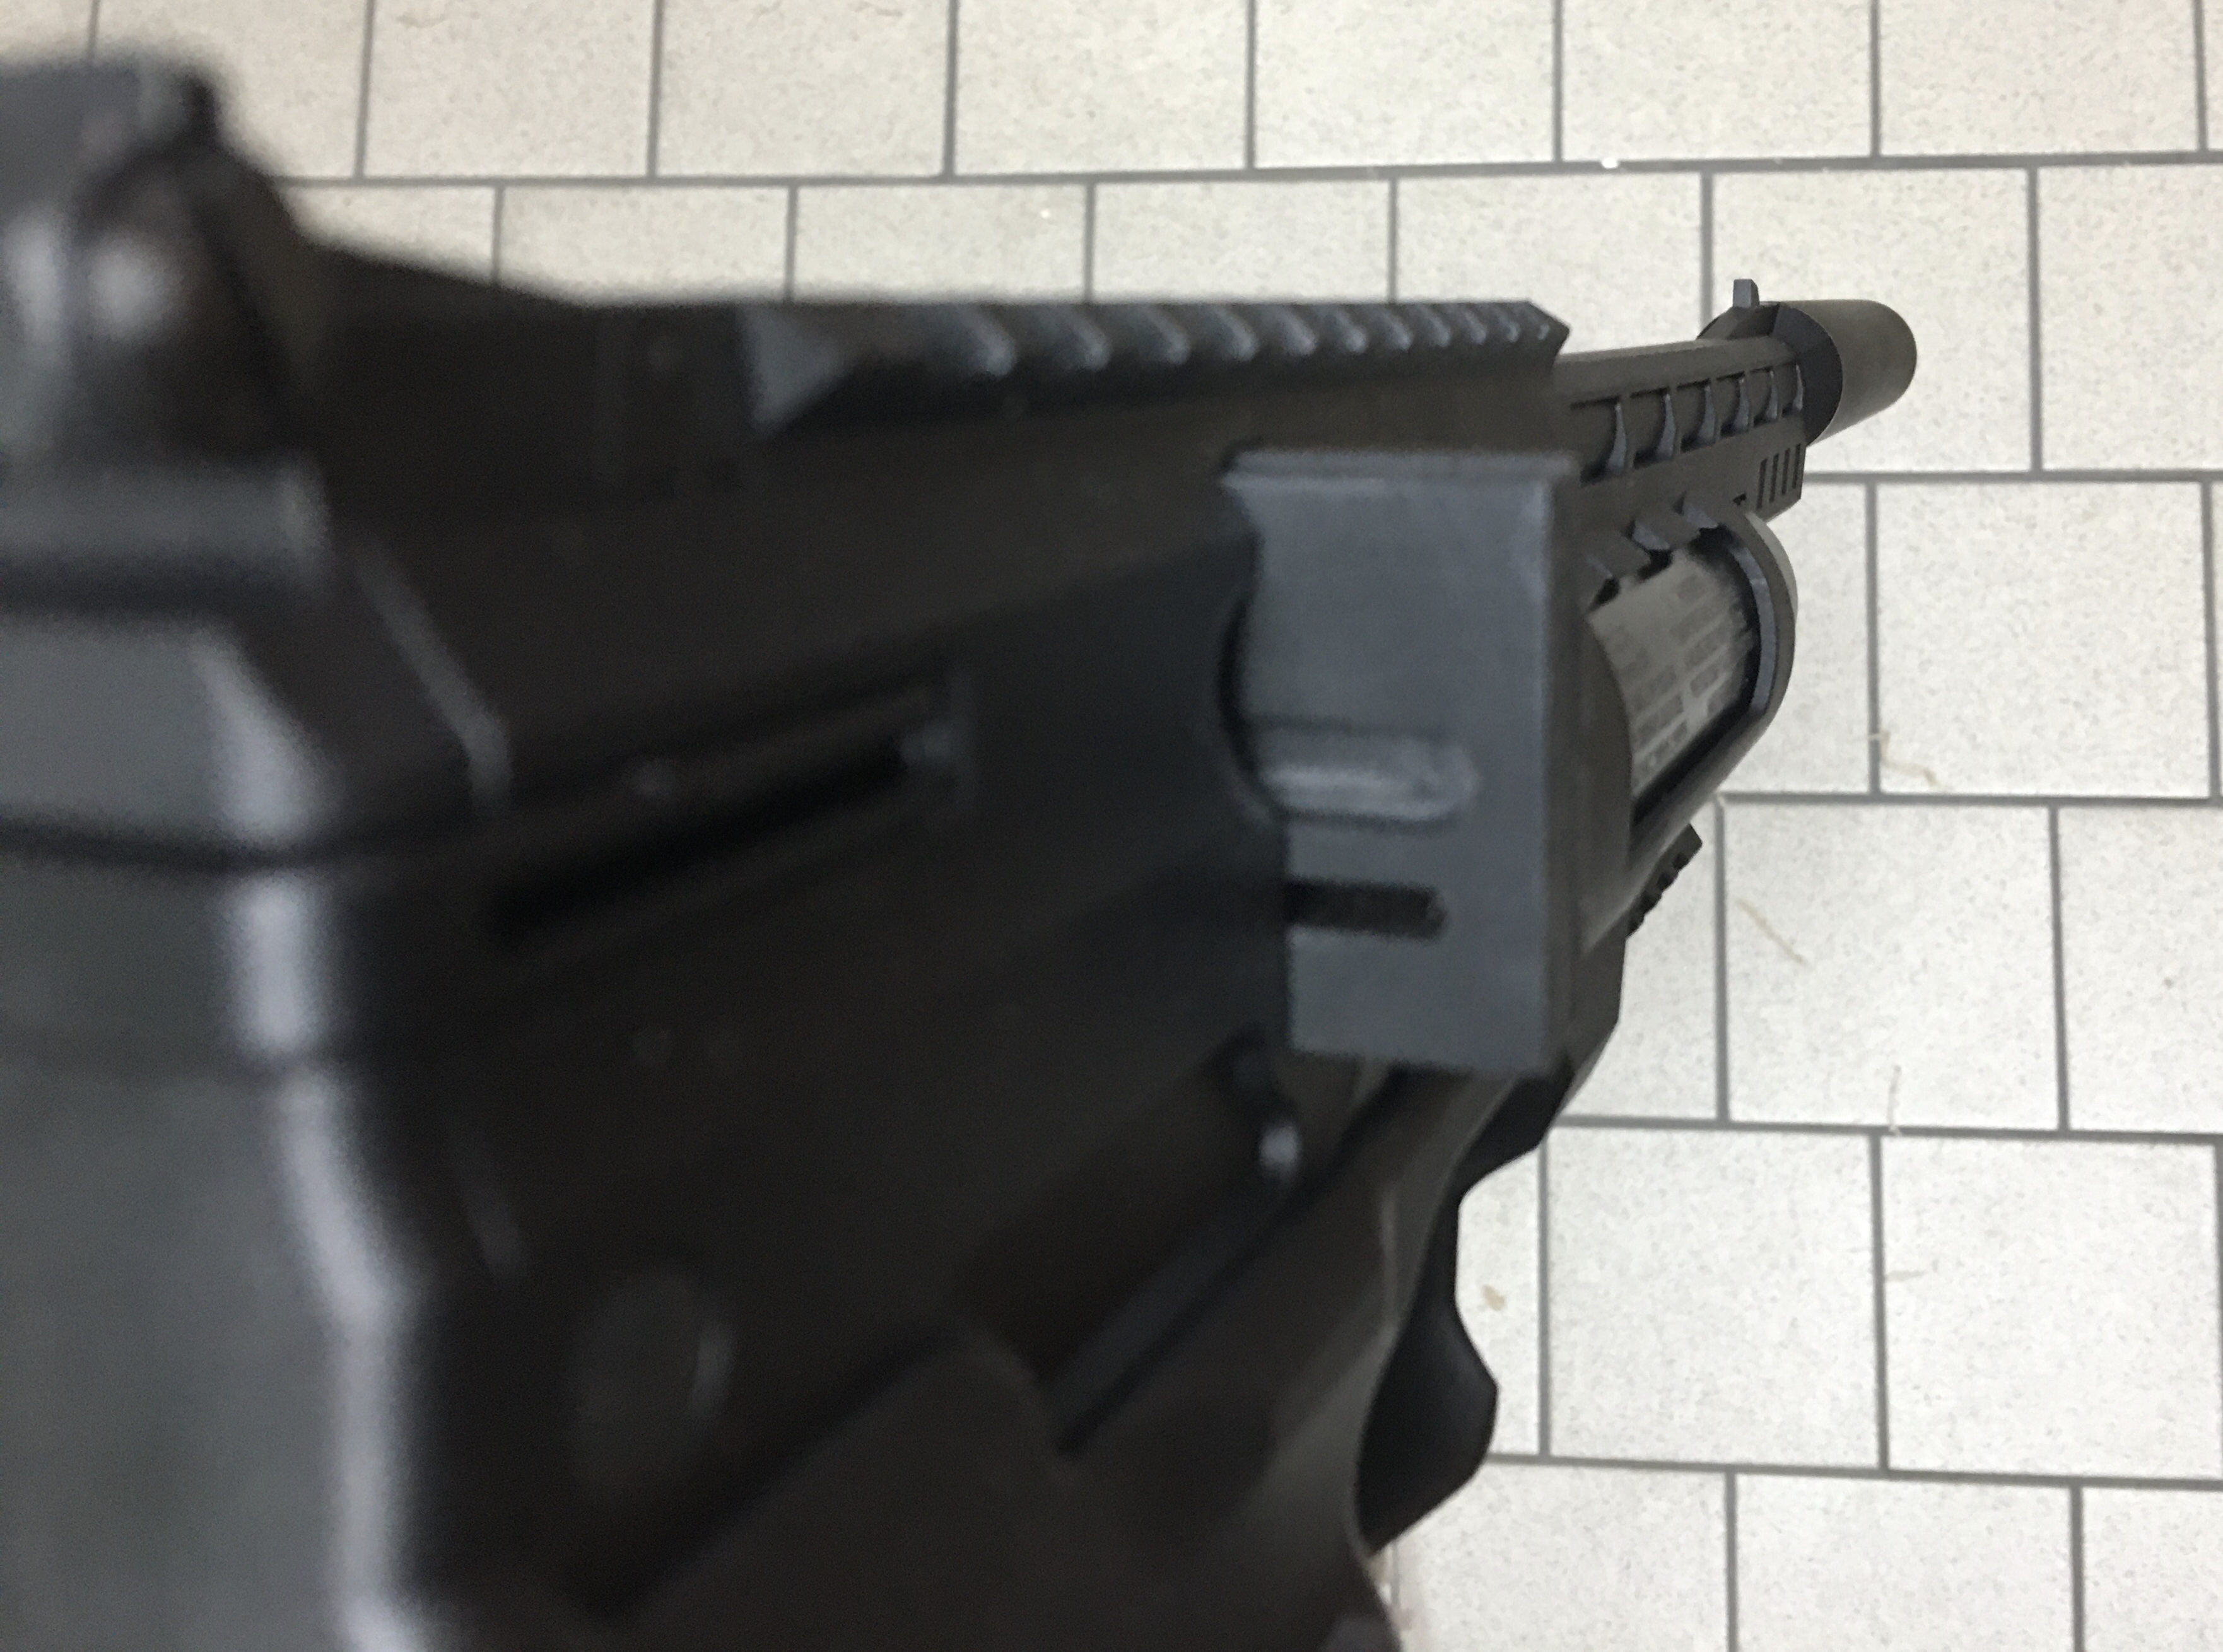 Einzelschussvorrichtung für HW 44, Kaliber 4,5mm in normaler Rechtsausführung der Waffe